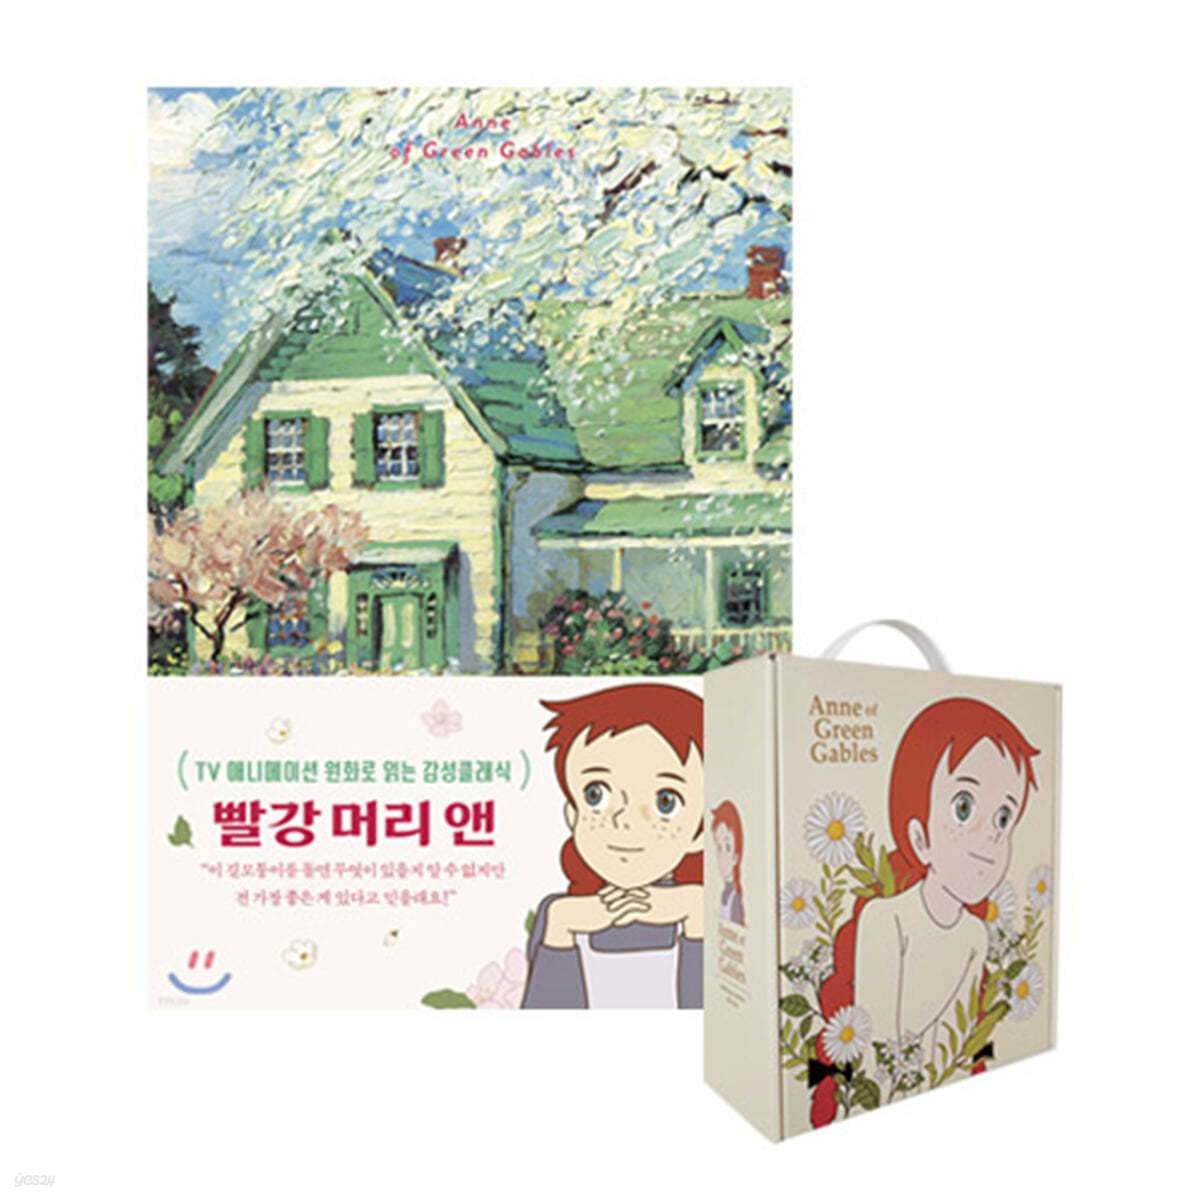 [종료] [YES24] 빨강 머리 앤 (리커버 유화 에디션) + 빨강 머리앤 드립백 커피 선물 세트